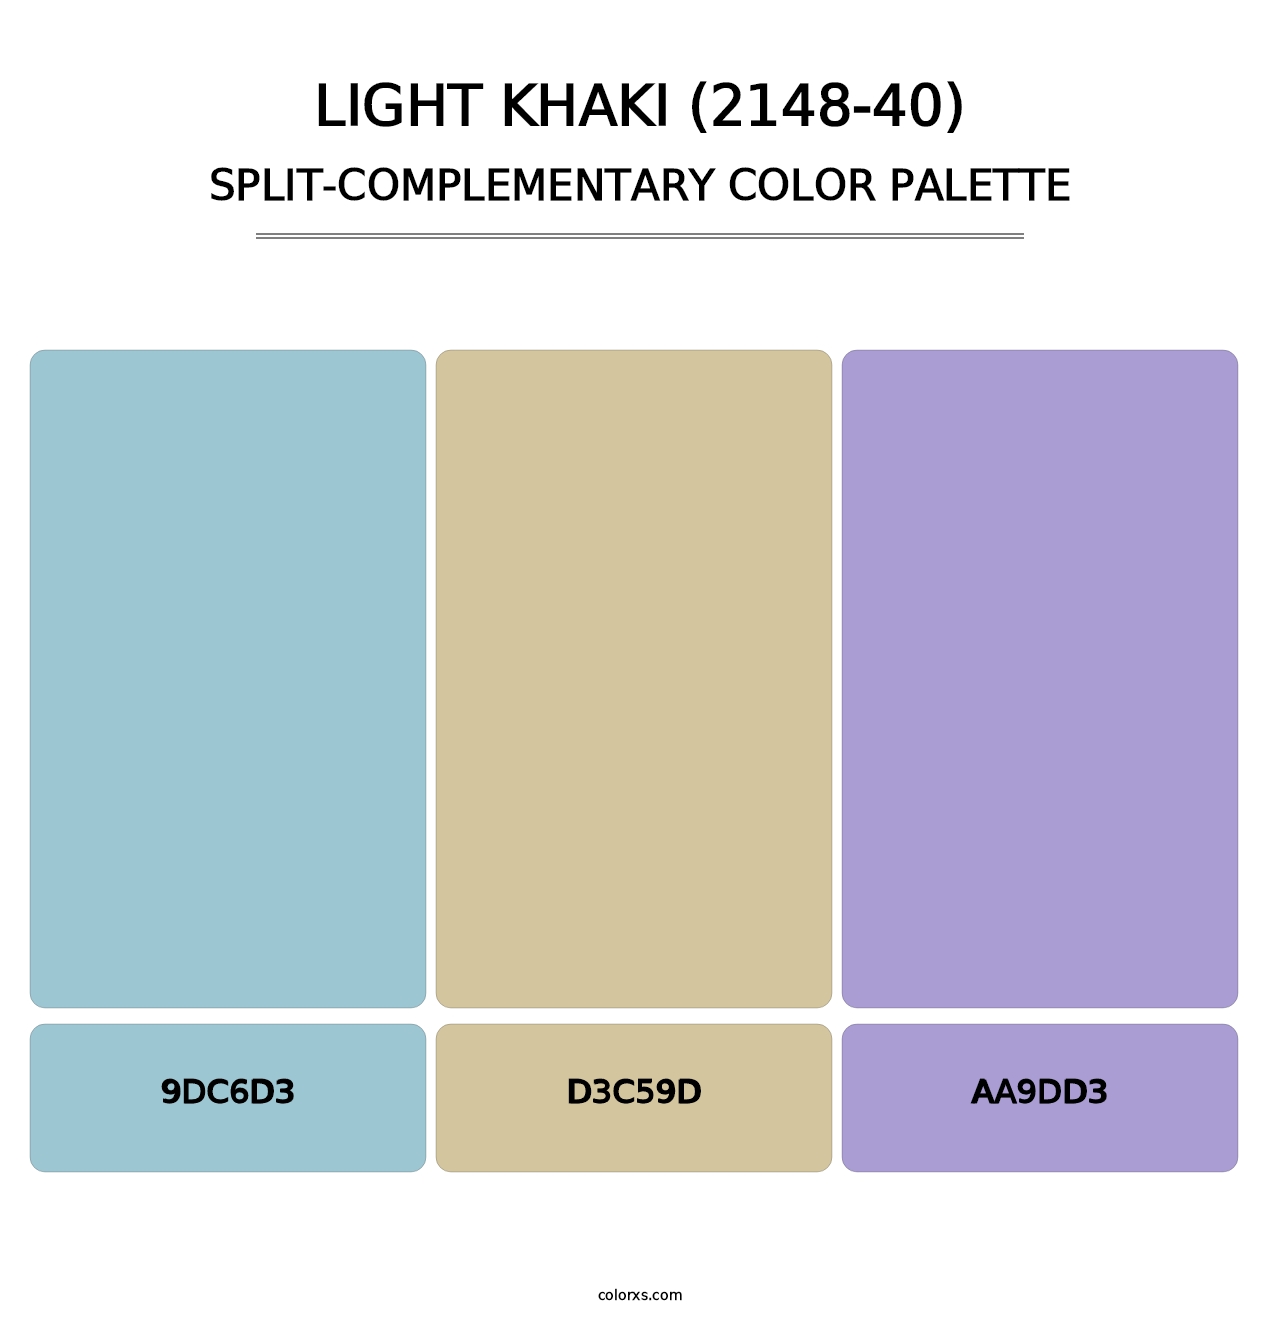 Light Khaki (2148-40) - Split-Complementary Color Palette